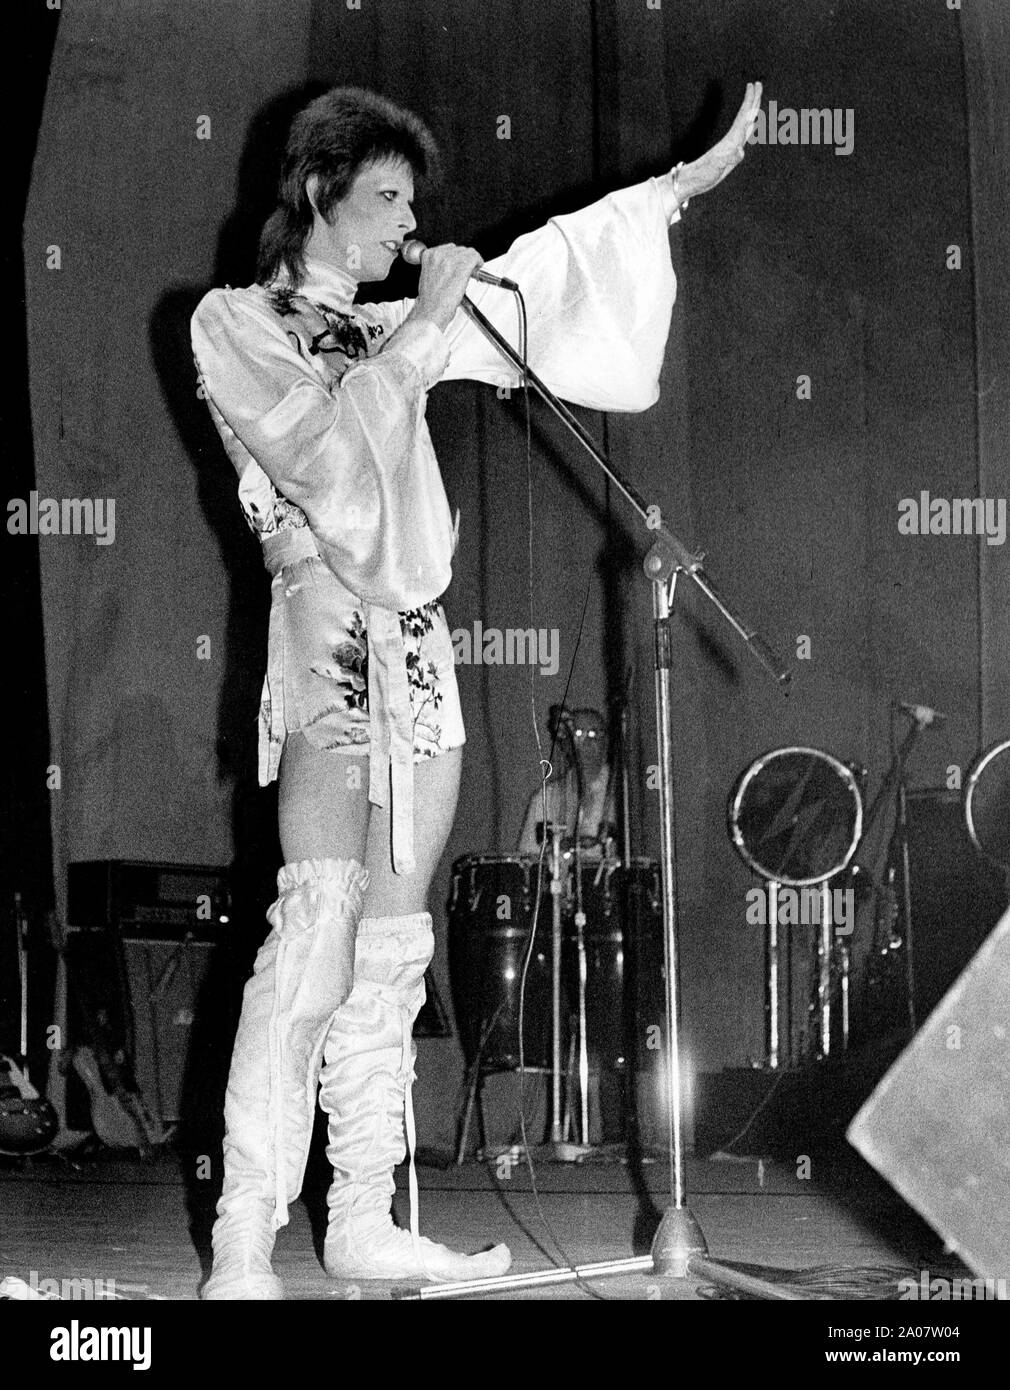 4 juillet 1973 - Londres, Angleterre, Royaume-Uni - pop star David Bowie lève la main vers la foule en live sur scène lors de son dernier concert au Théâtre de l'Odéon. Il a proclamé aux fans à la fin, que "c'est le concert que je n'oublierai jamais, comme c'est le dernier je vais jamais le faire.' (image Crédit : © Keystone Press Agency/Keystone USA par ZUMAPRESS.com) Banque D'Images